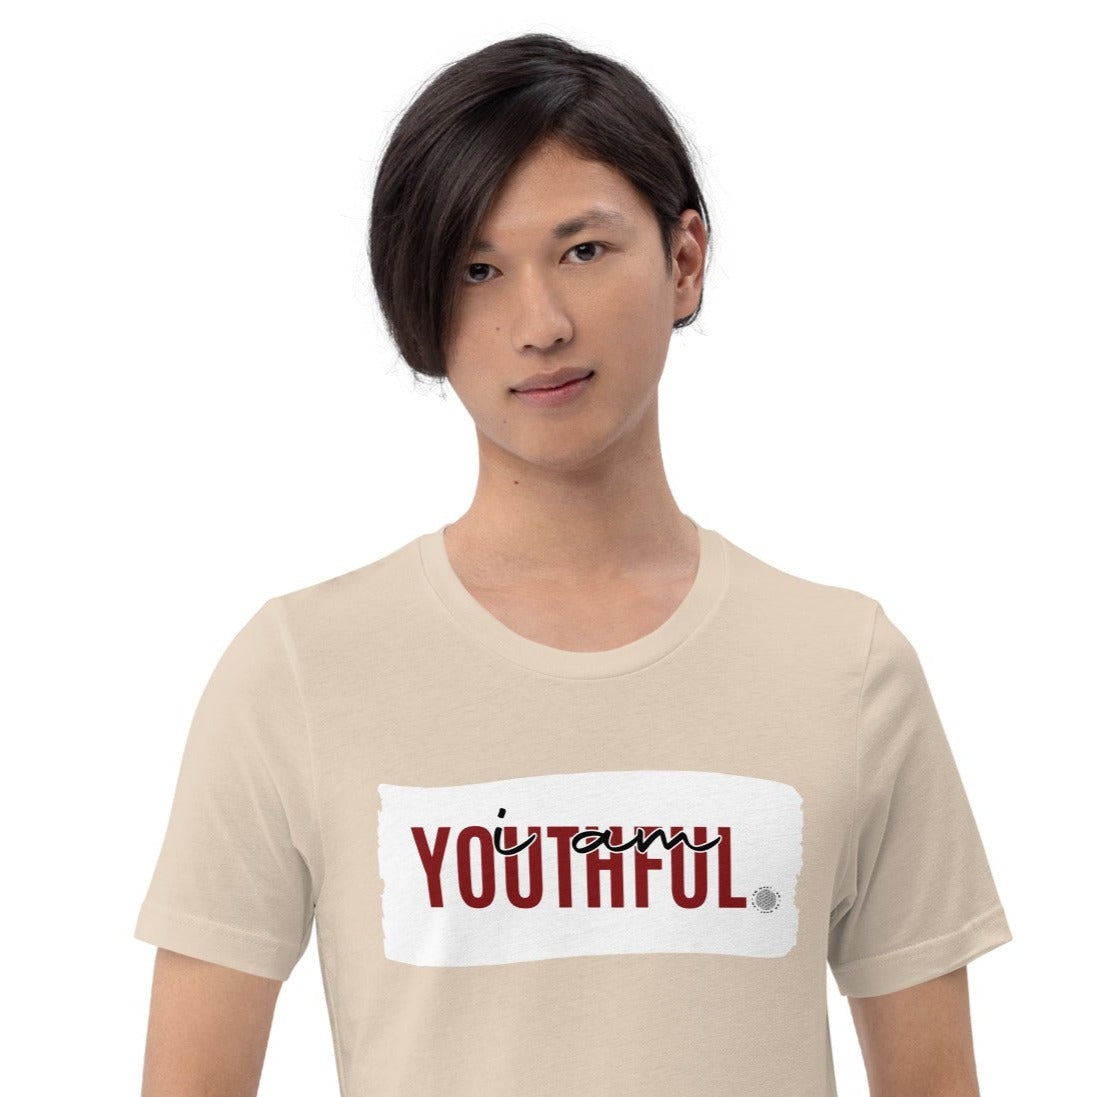 I Am Youthful Adult Unisex T-Shirt tan